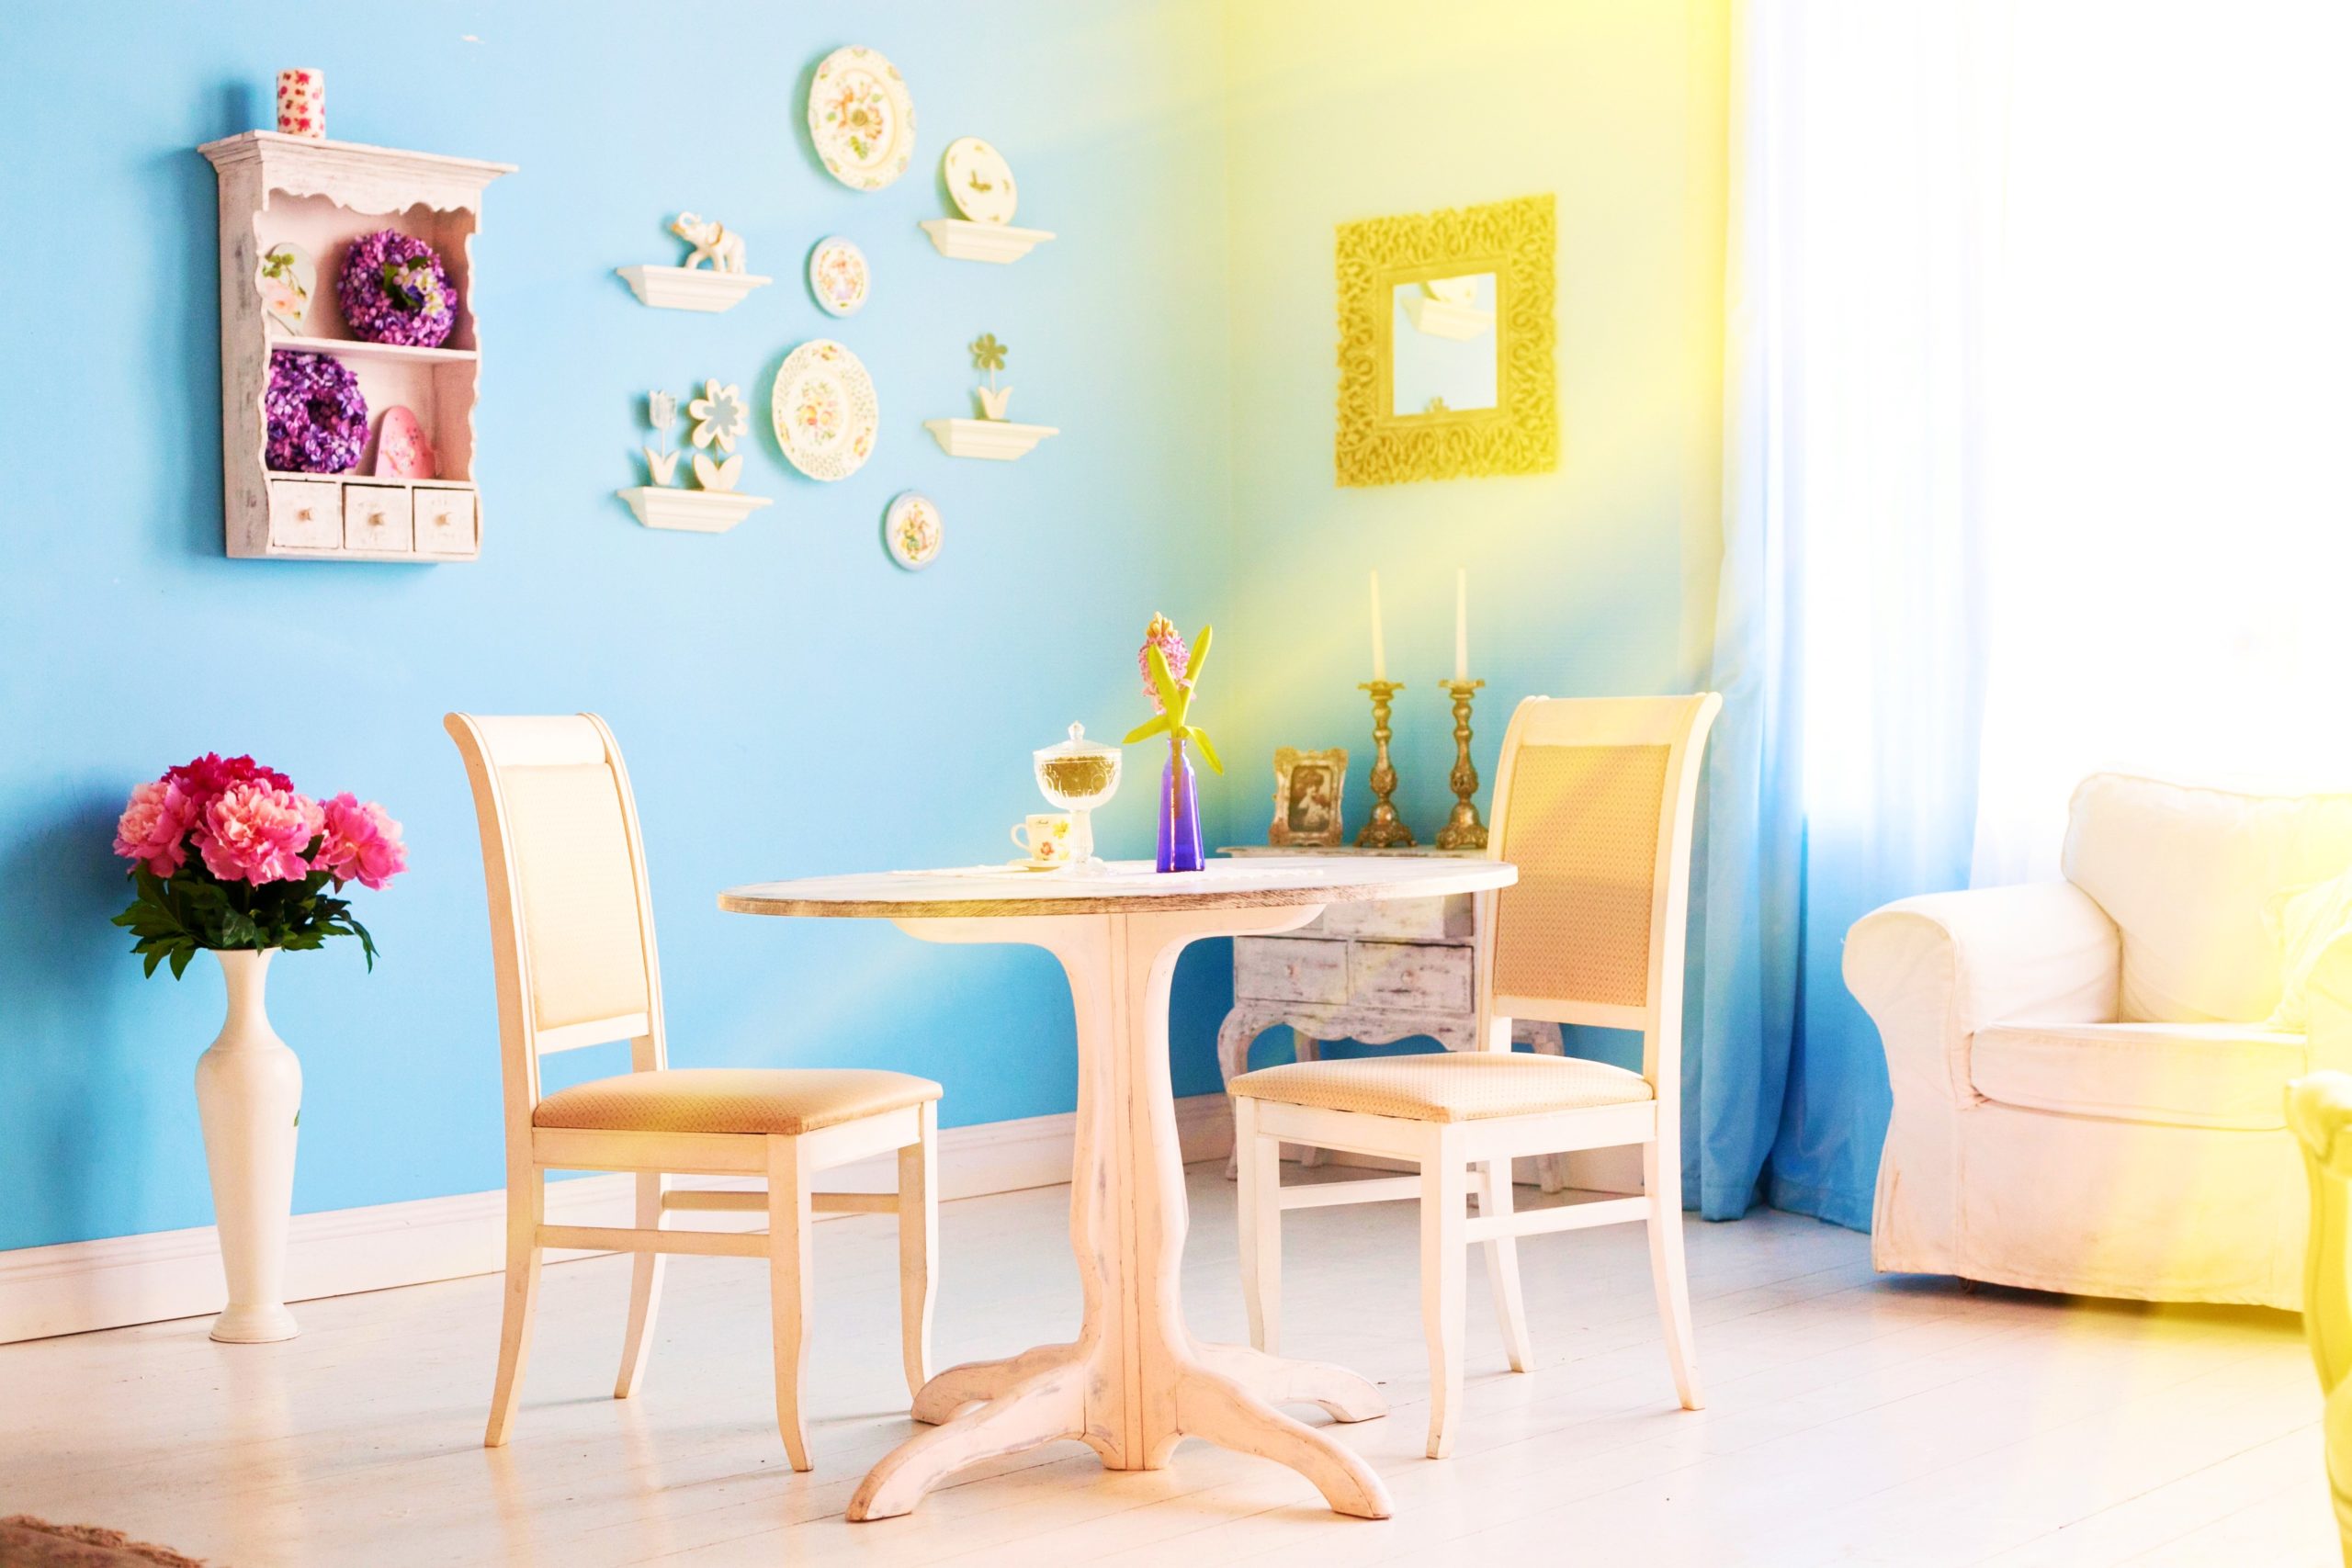  <img src="blue.jpg" alt="blue living room with natural light"/> 